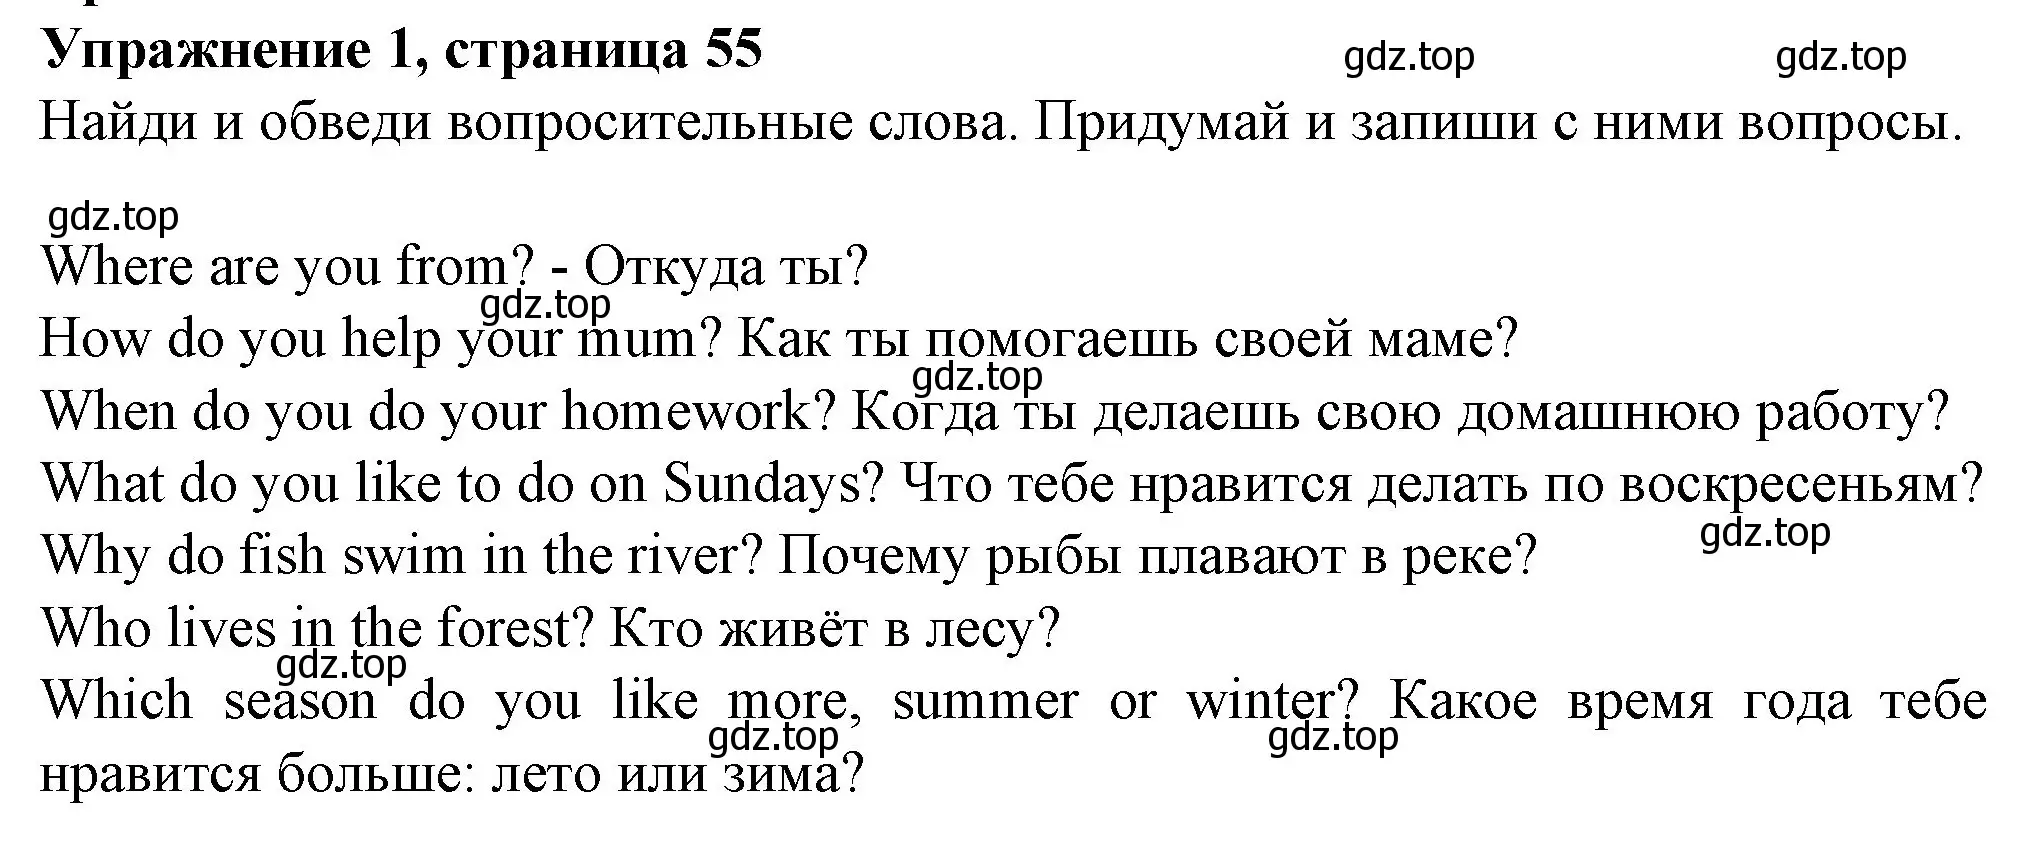 Решение номер 1 (страница 55) гдз по английскому языку 3 класс Биболетова, Денисенко, рабочая тетрадь